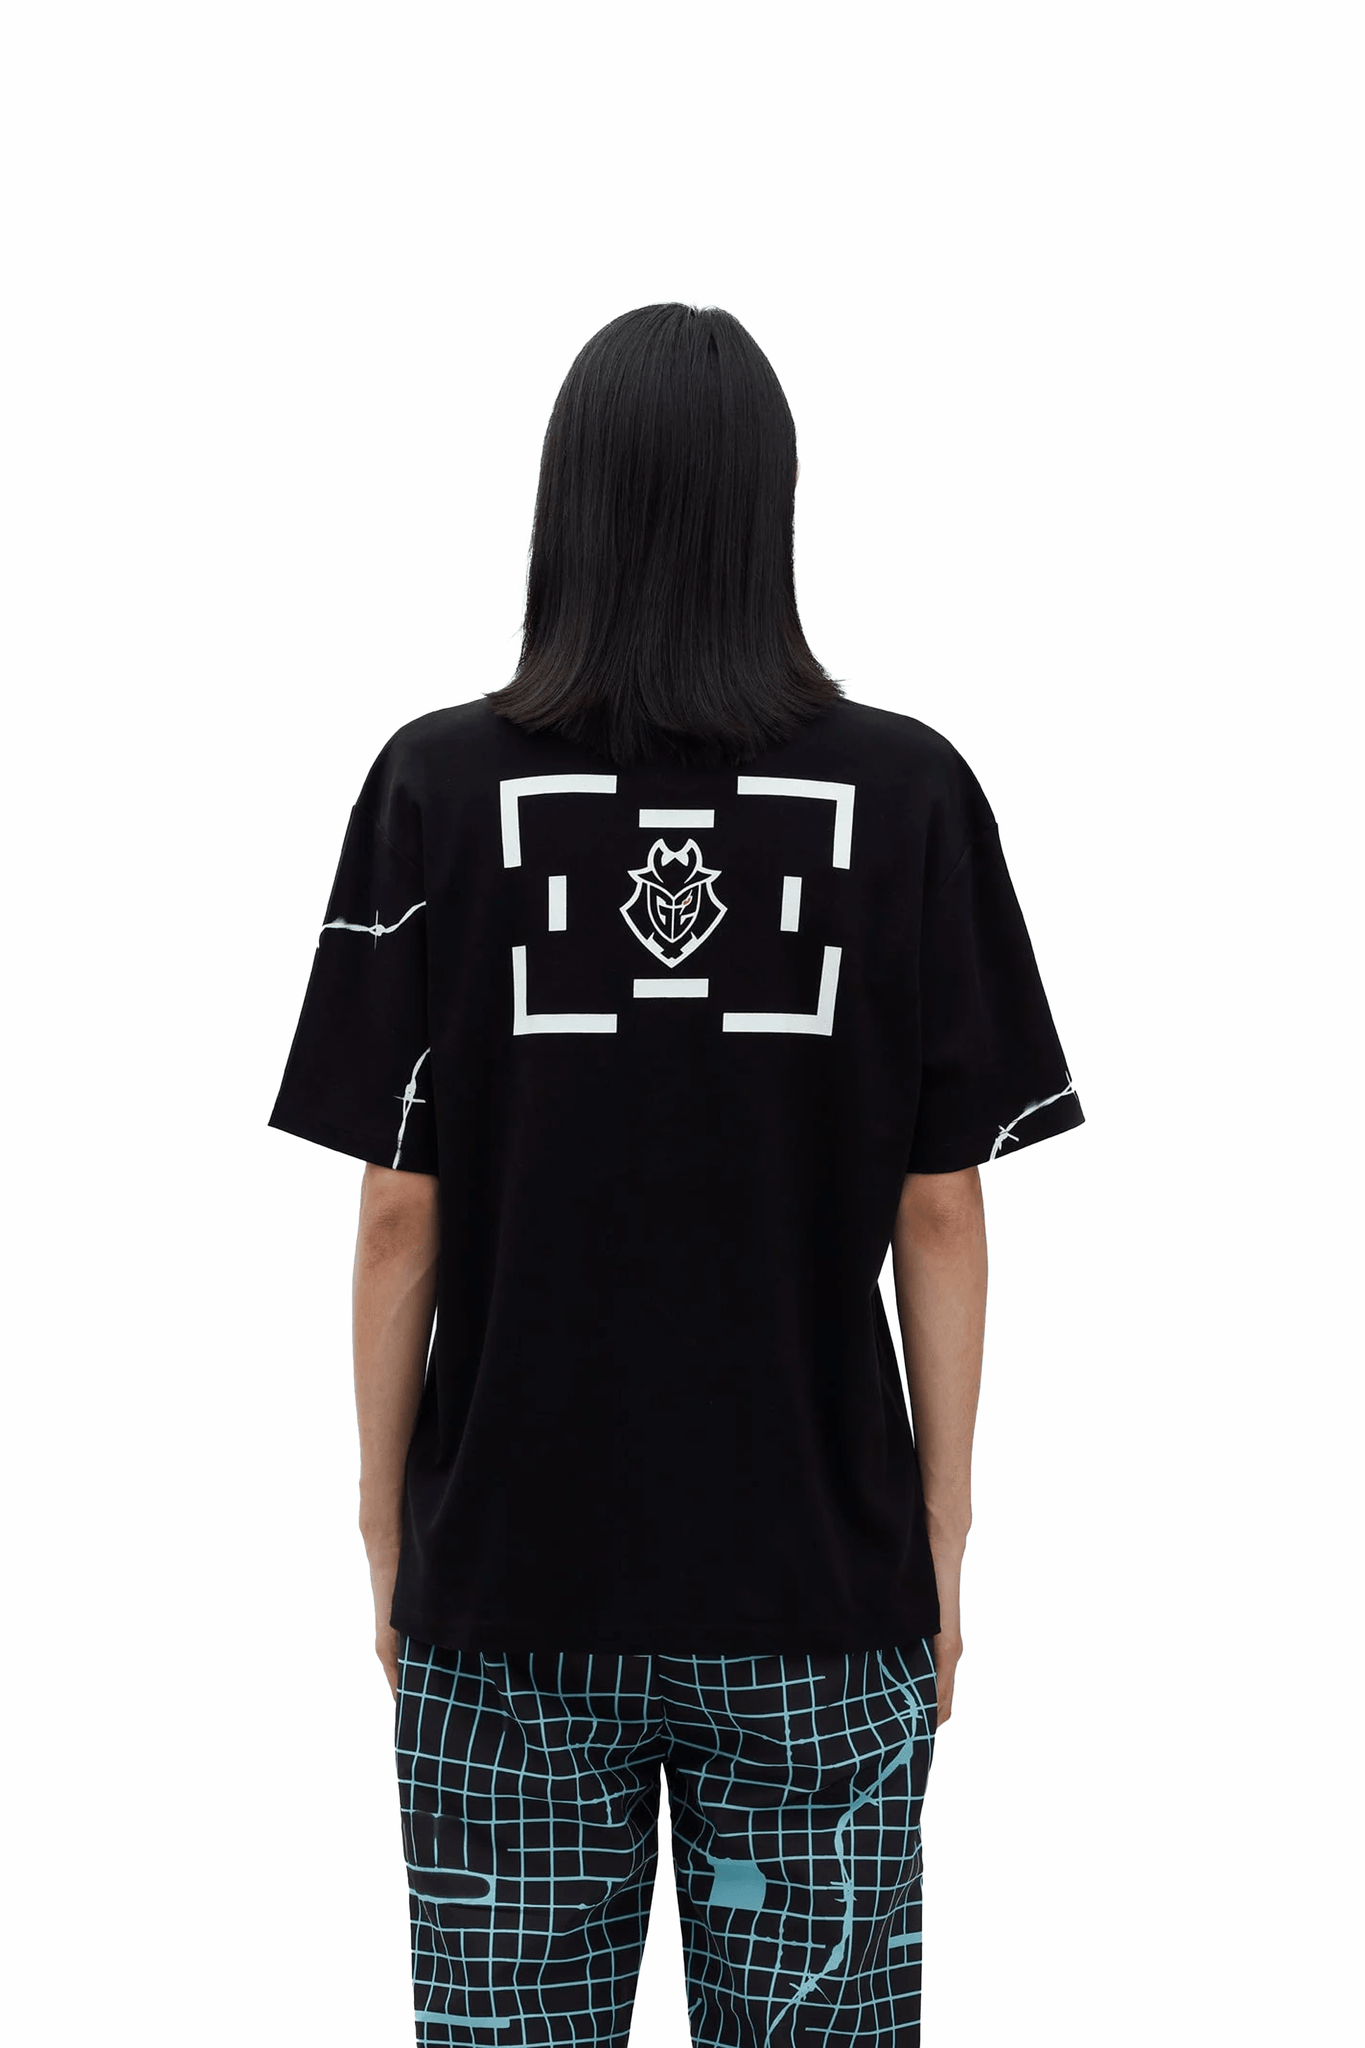 G2 x LB Black T-Shirt